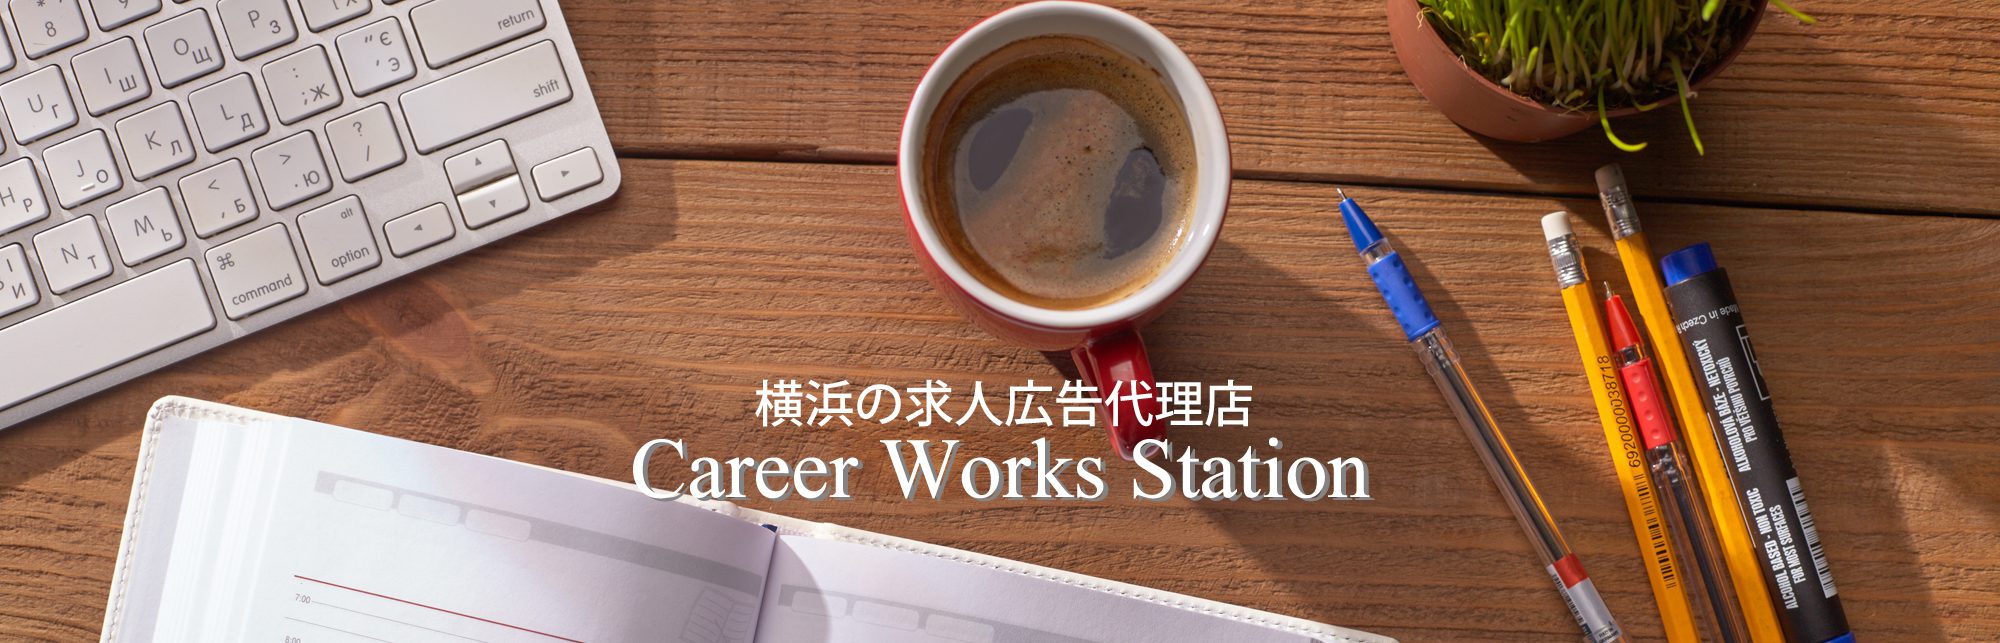 Career Works Station